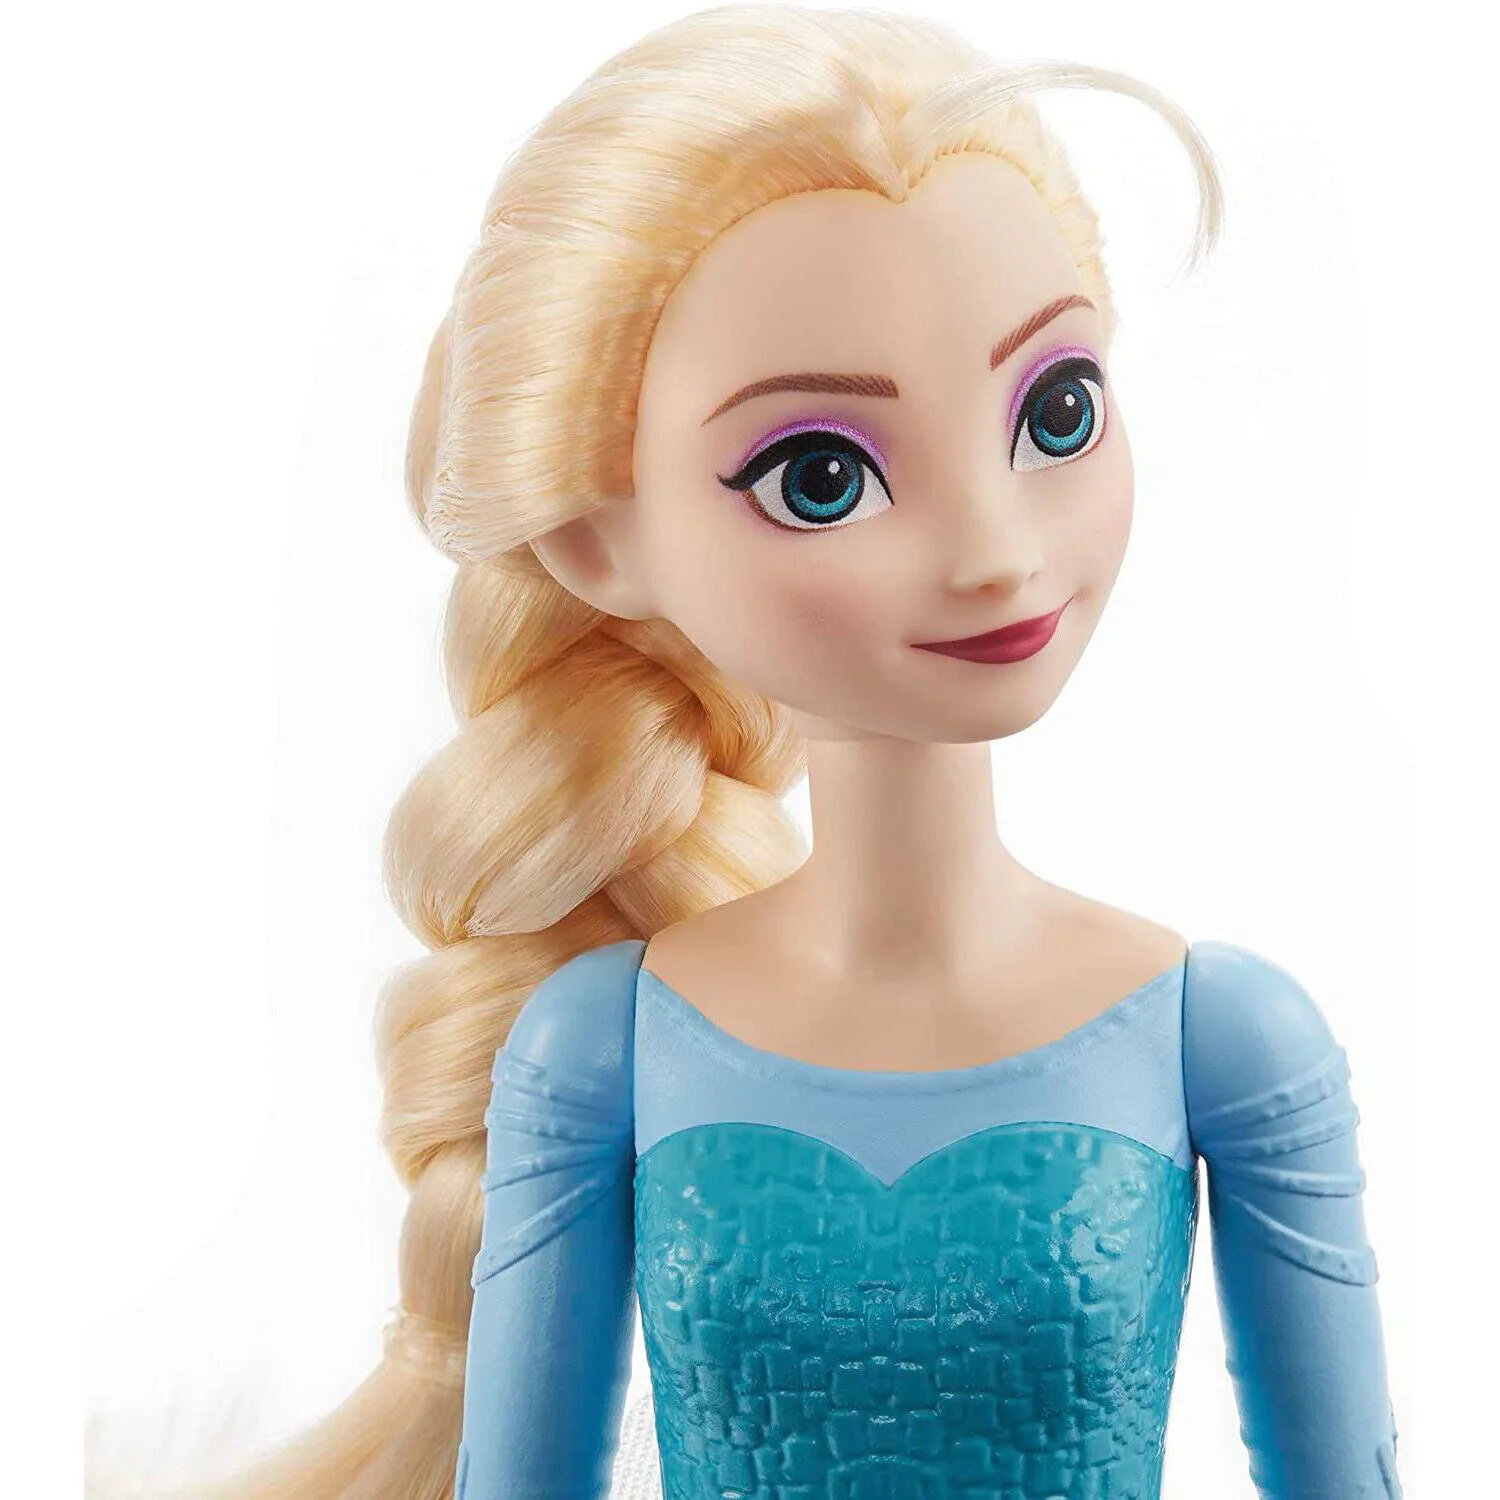 Кукла Barbie Disney Princess Эльза